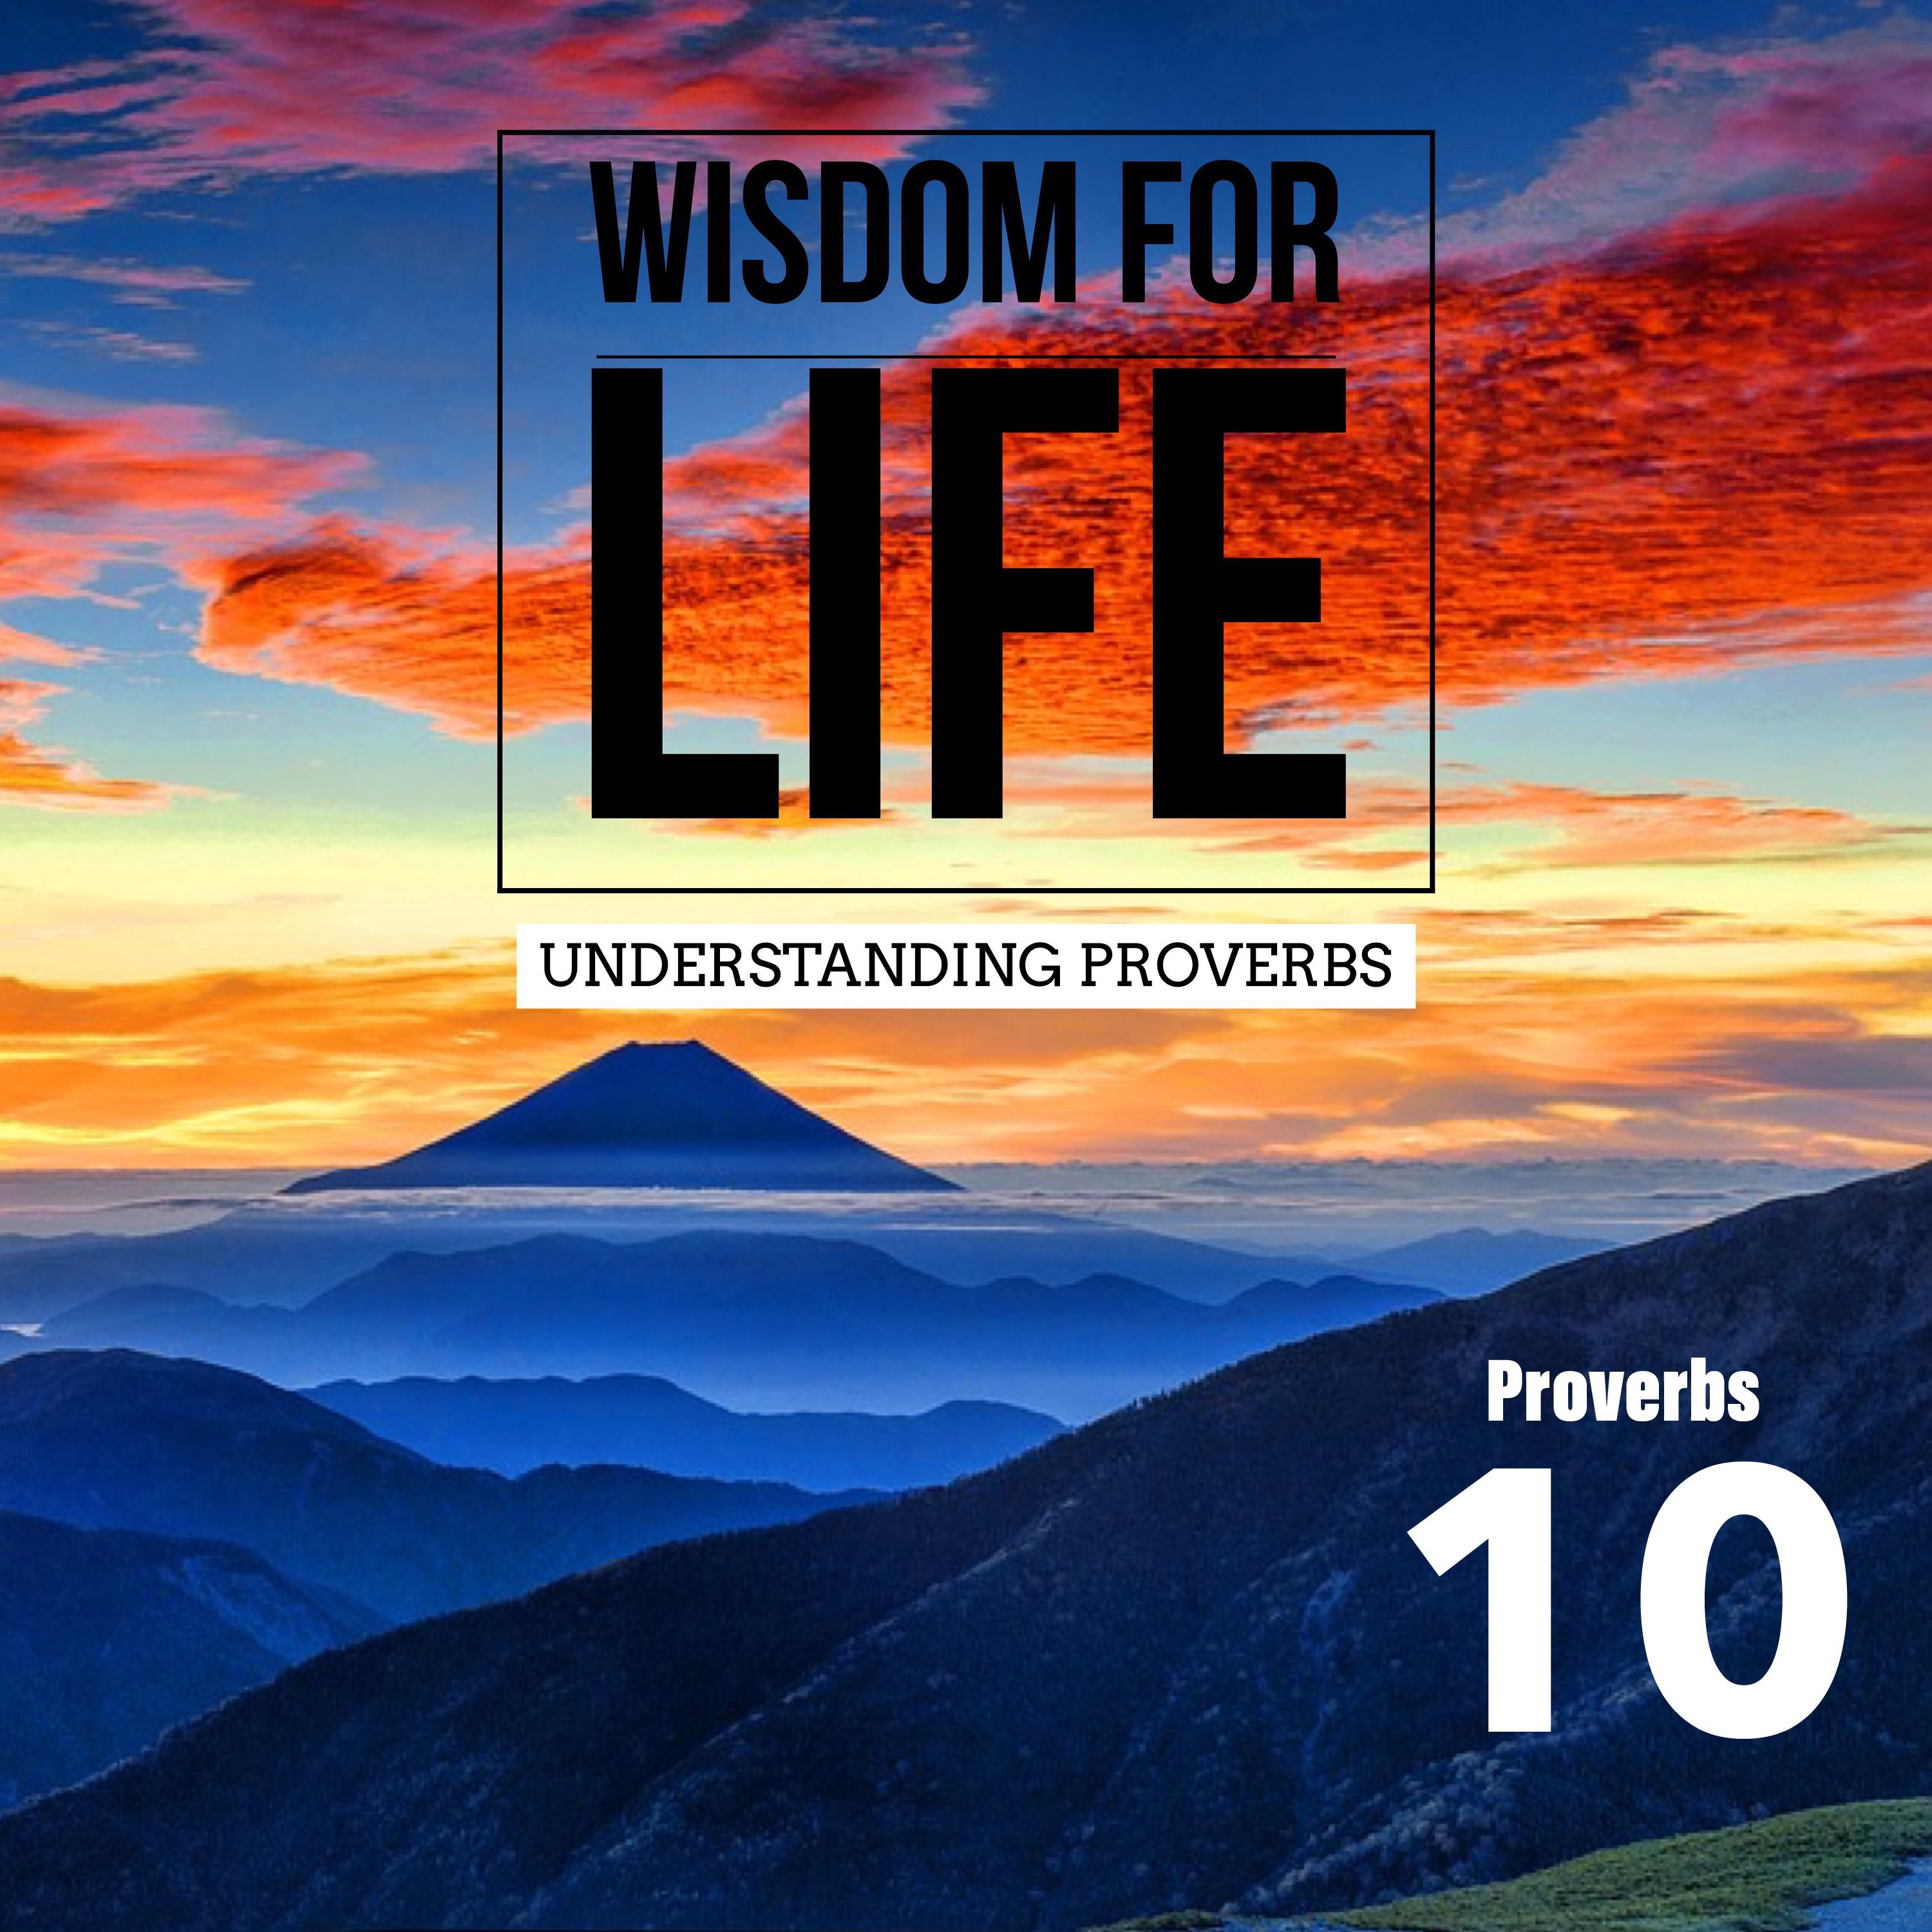 UNDERSTANDING PROVERBS 10